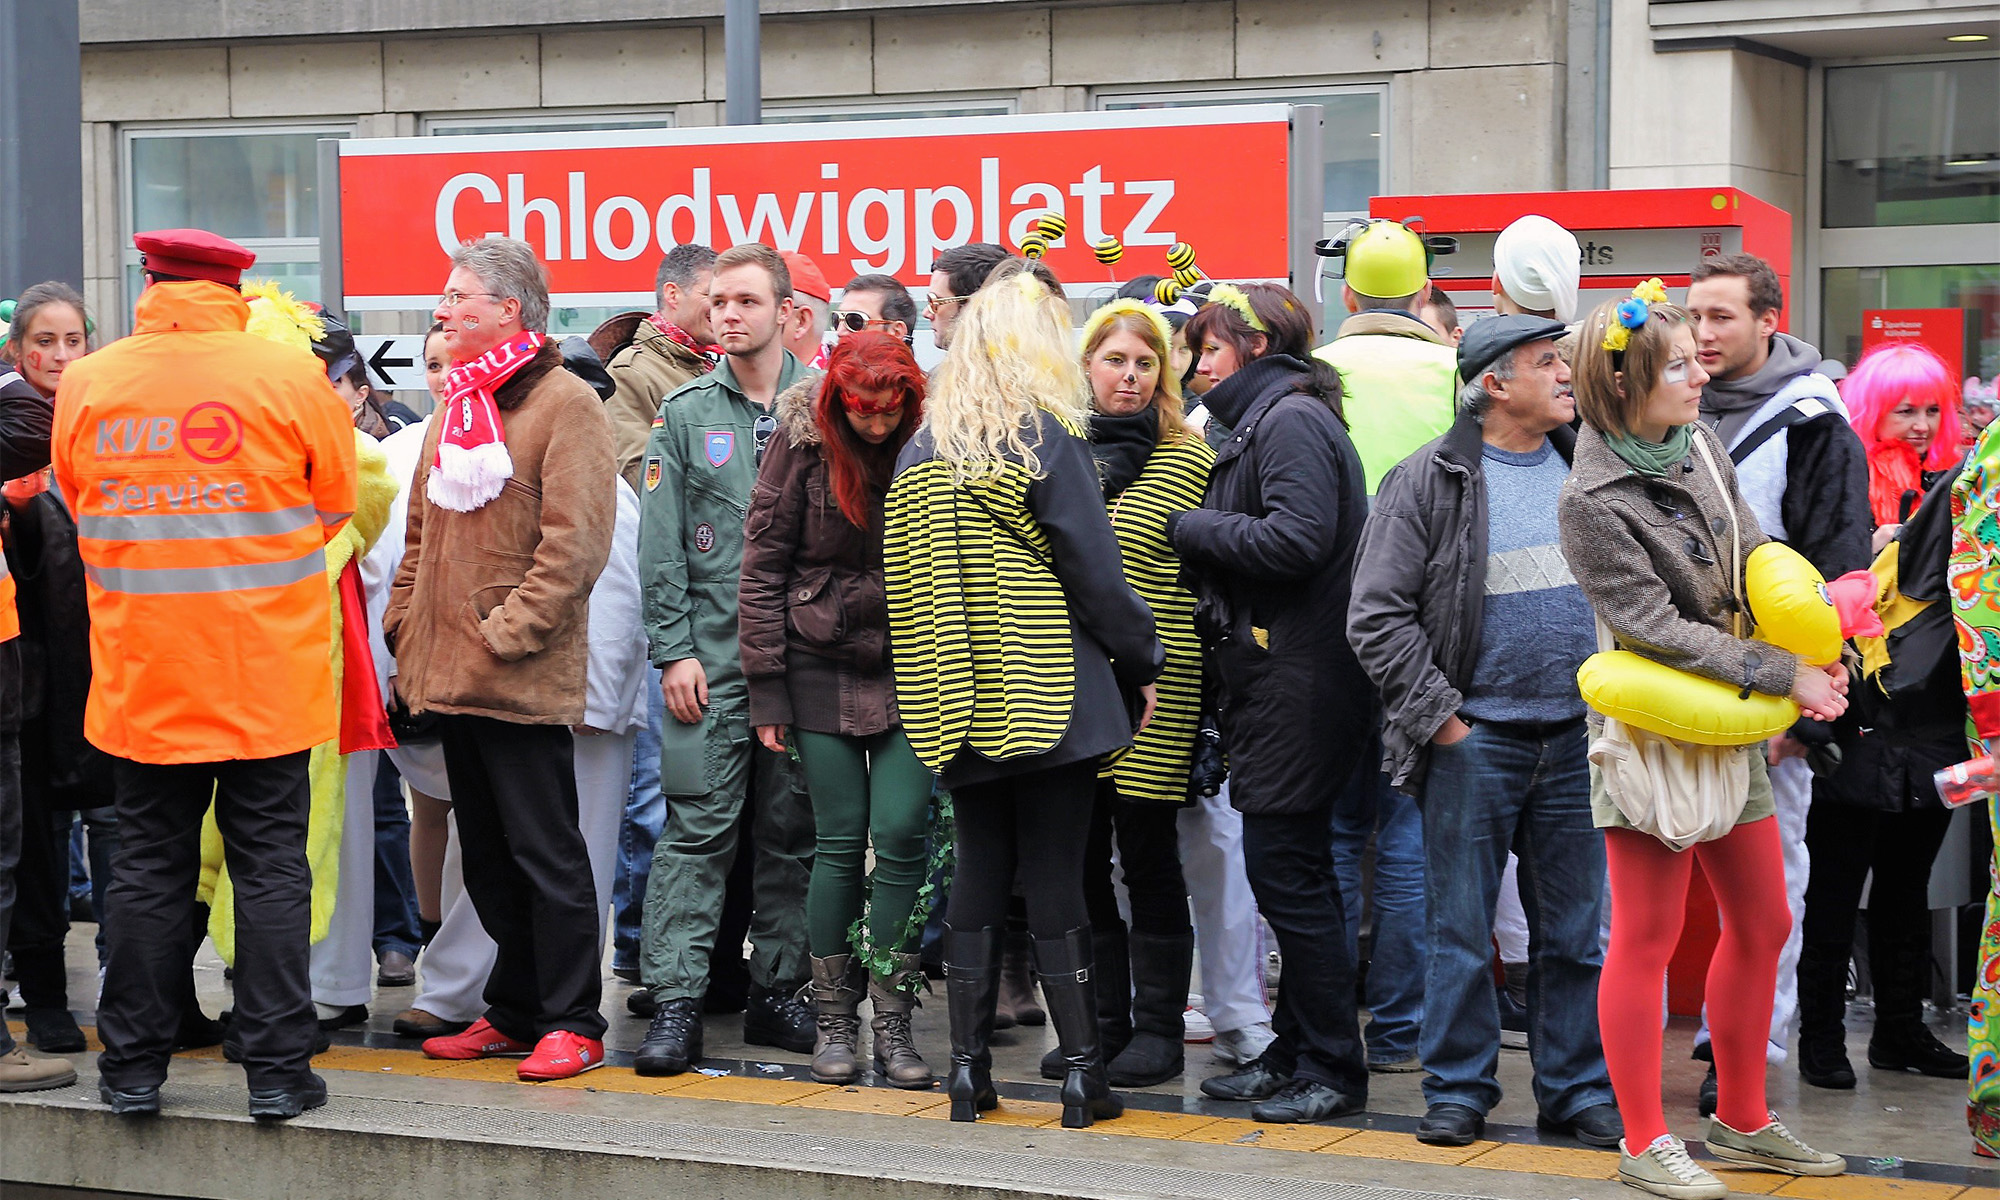 Karnevalisten stehen in Köln an der KVB-Haltestelle "Chlodwigplatz"